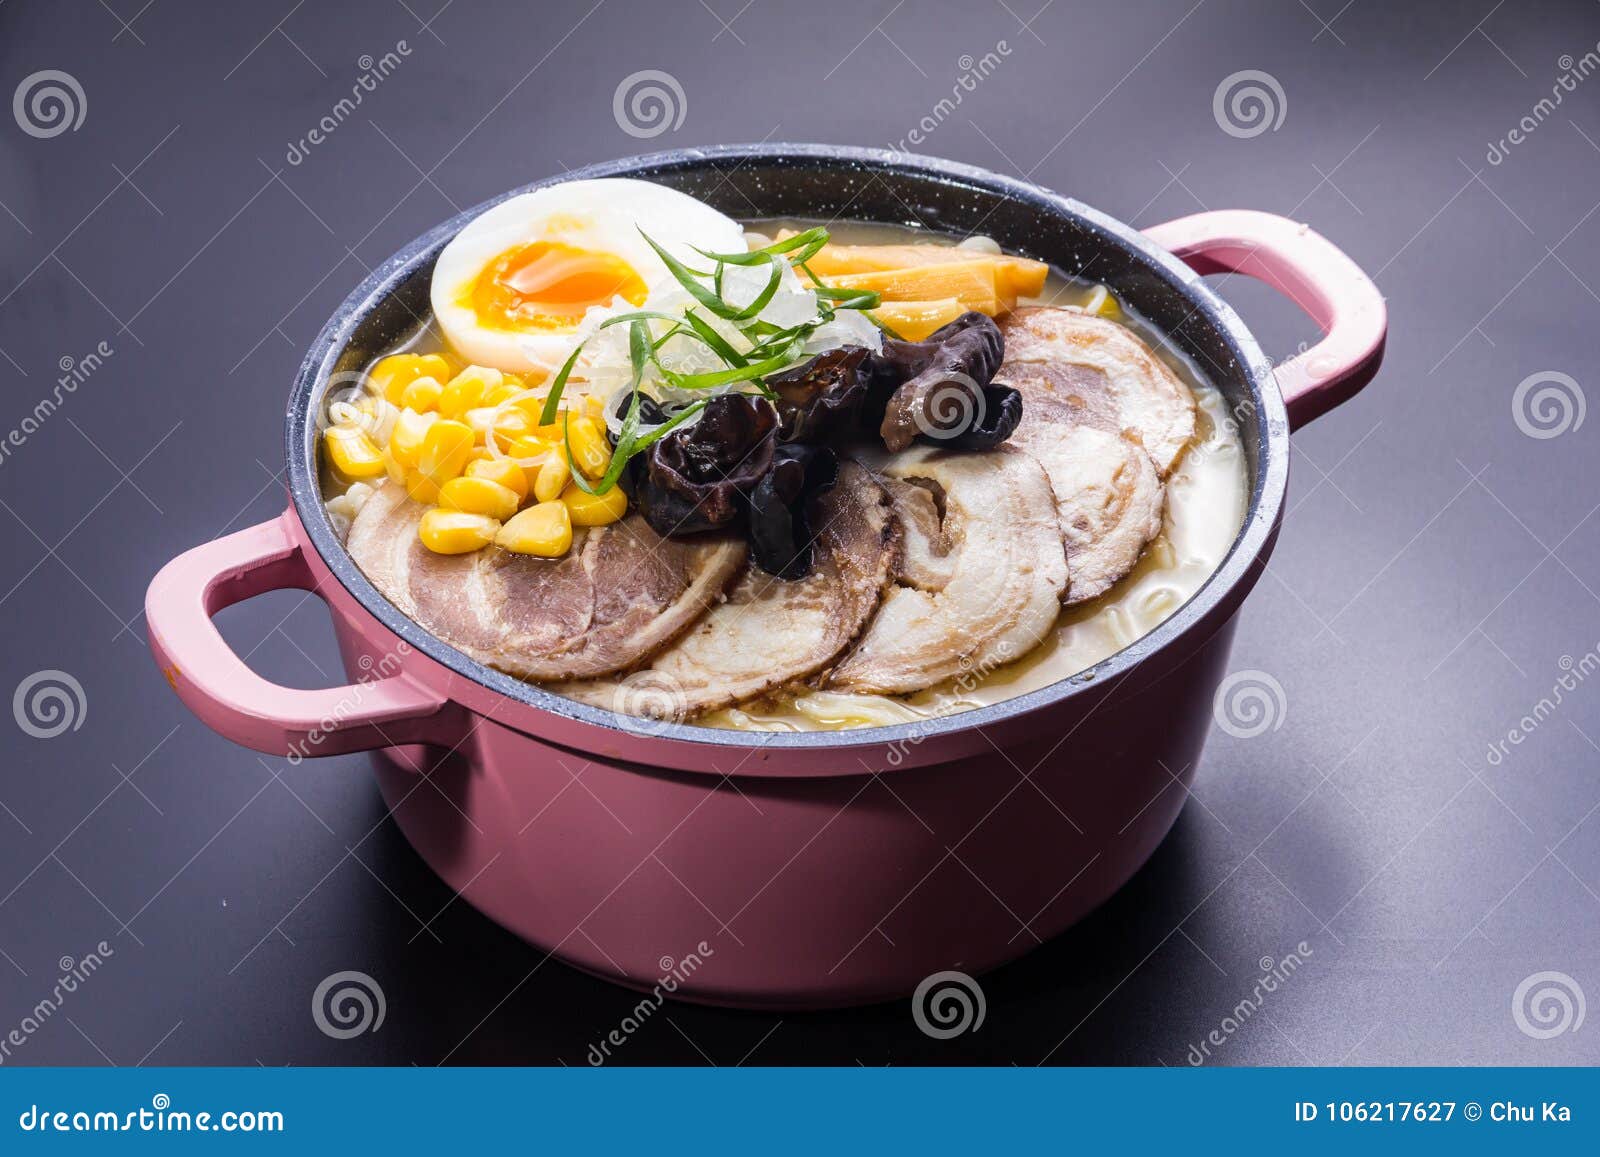 Τα ιαπωνικά τα νουντλς στη σούπα. Μια ιαπωνική παραδοσιακή κουζίνα νουντλς αποκαλούμενη με το βρασμένο αυγό, το αργό χοιρινό κρέας στη σόγια ή τη σούπα χοιρινού κρέατος